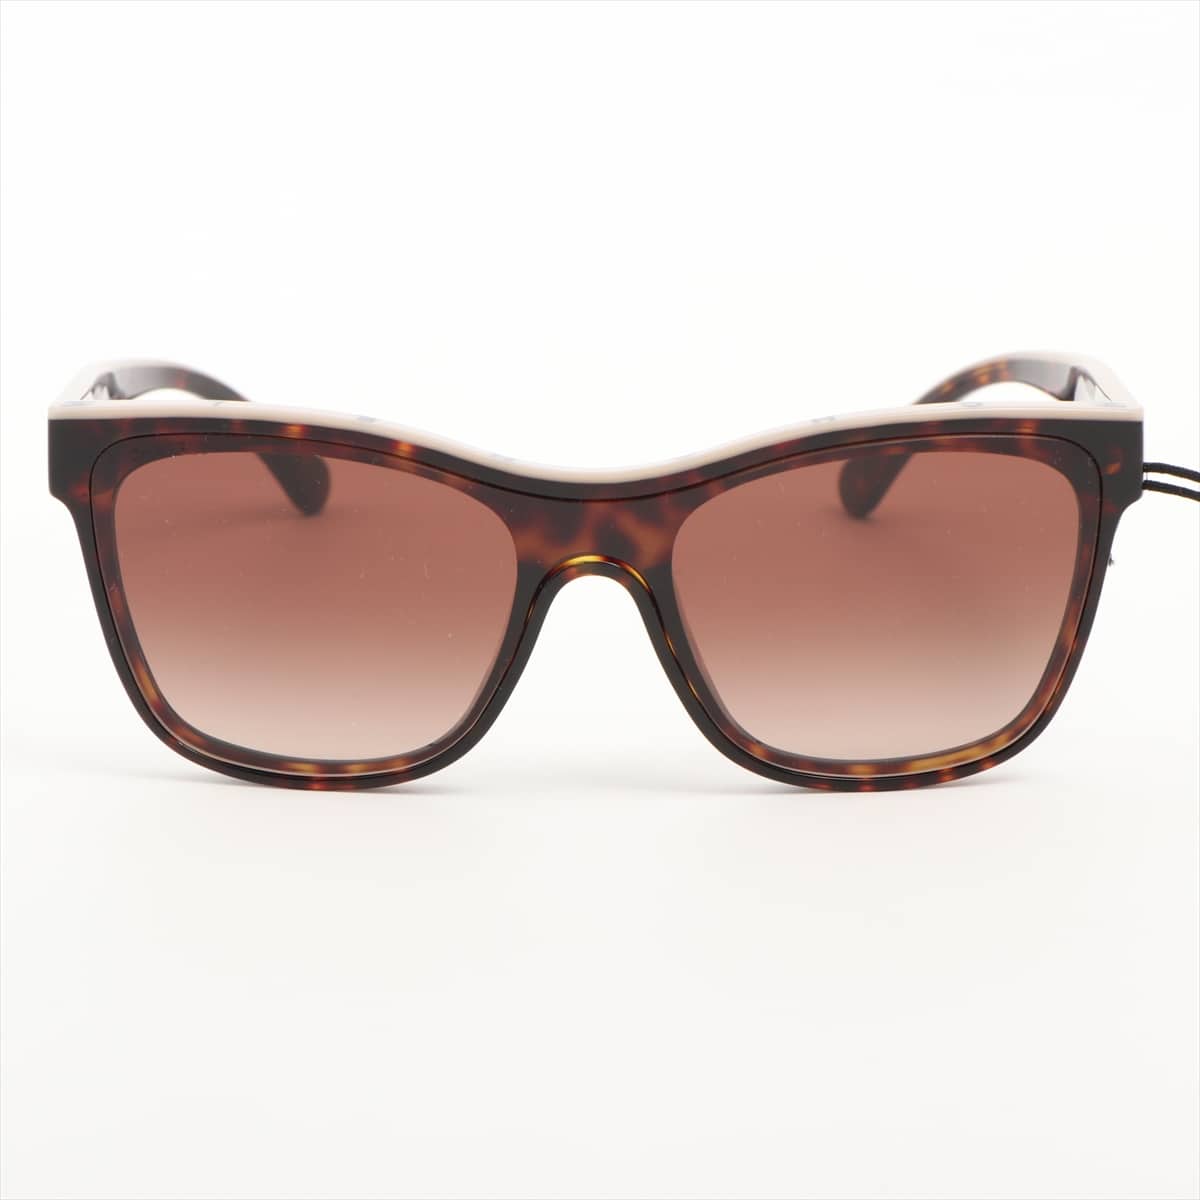 Chanel 5418-A Coco Mark Sunglasses Plastic Brown